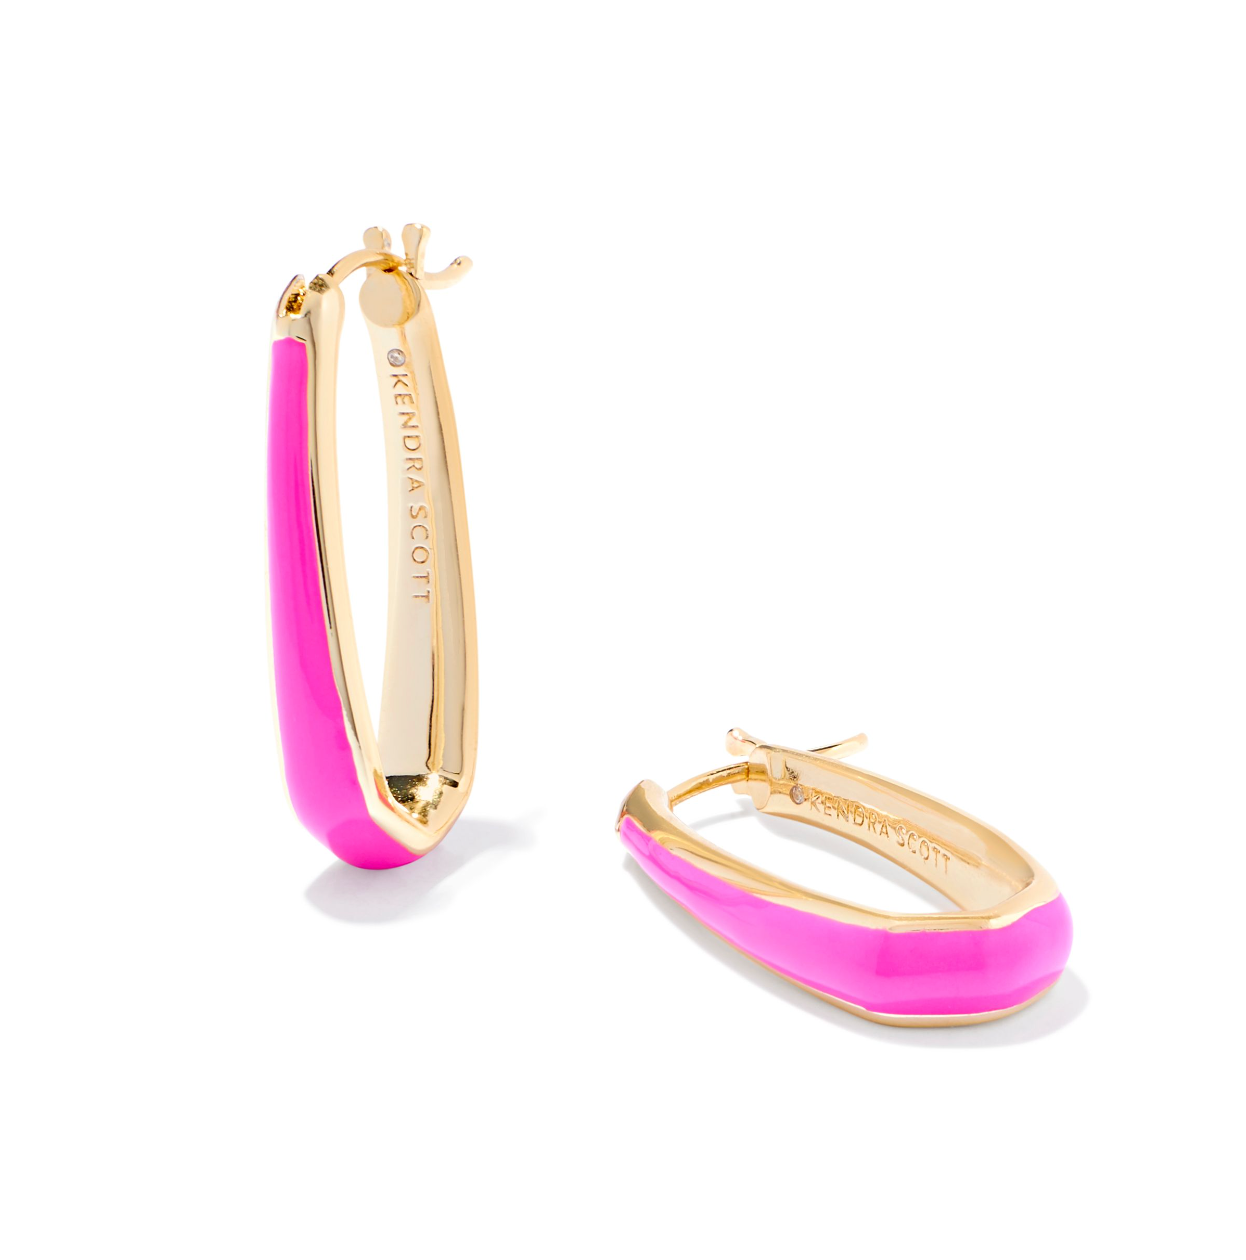 Kelsey Gold Hoop Earrings in Pink Enamel | KENDRA SCOTT